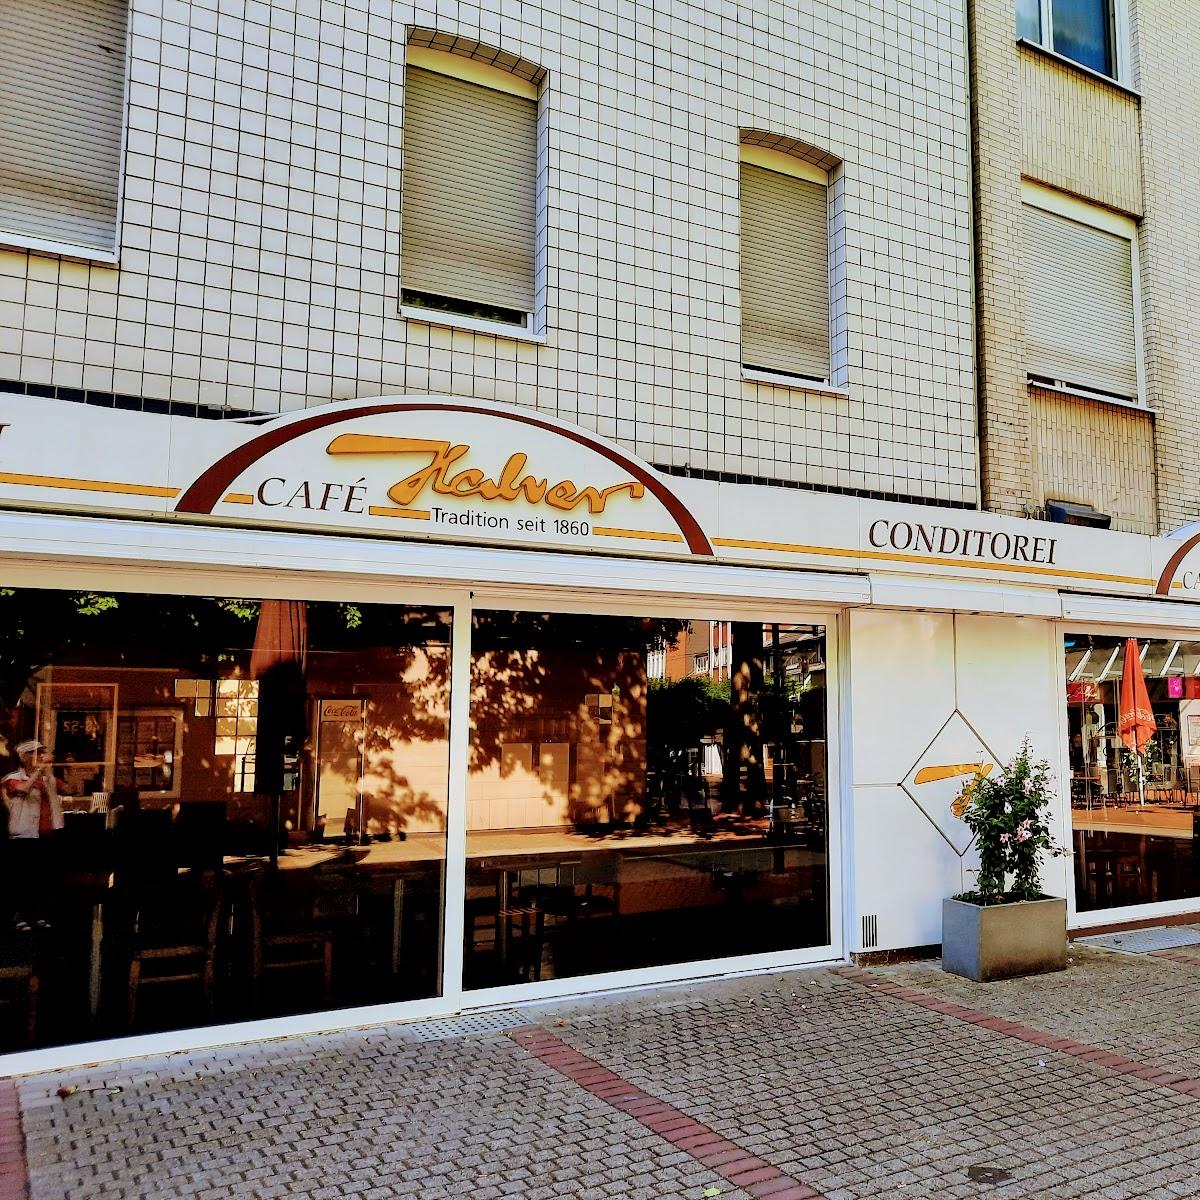 Restaurant "Ristorante La Fontana" in Frechen